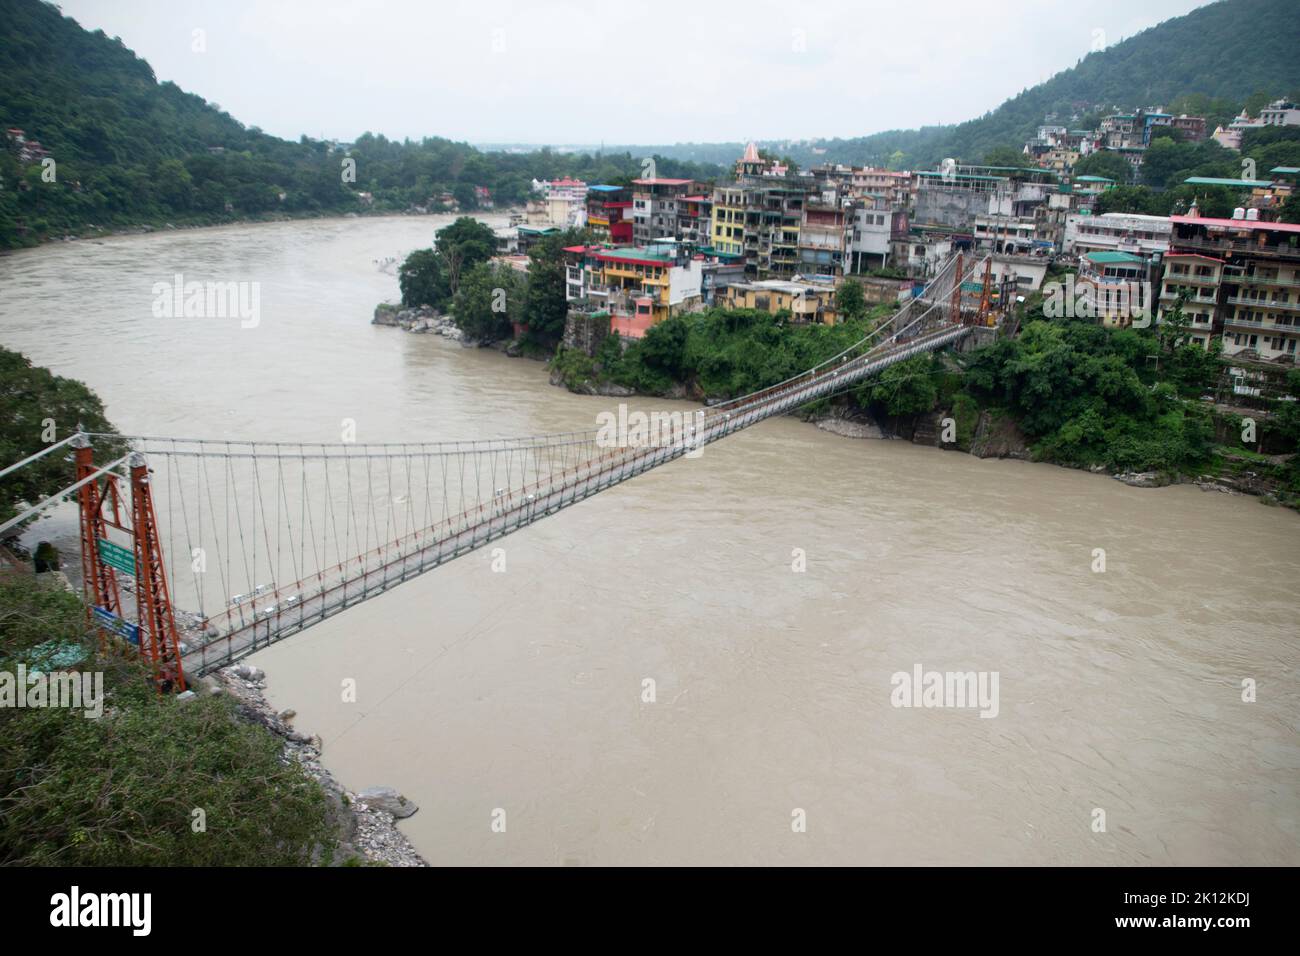 Lakshman Jhula un pont suspendu de l'autre côté de la rivière Ganges. Le pont relie les villages de Tapovan à Jonk. Rishikesh, Uttarakhand, Inde Banque D'Images